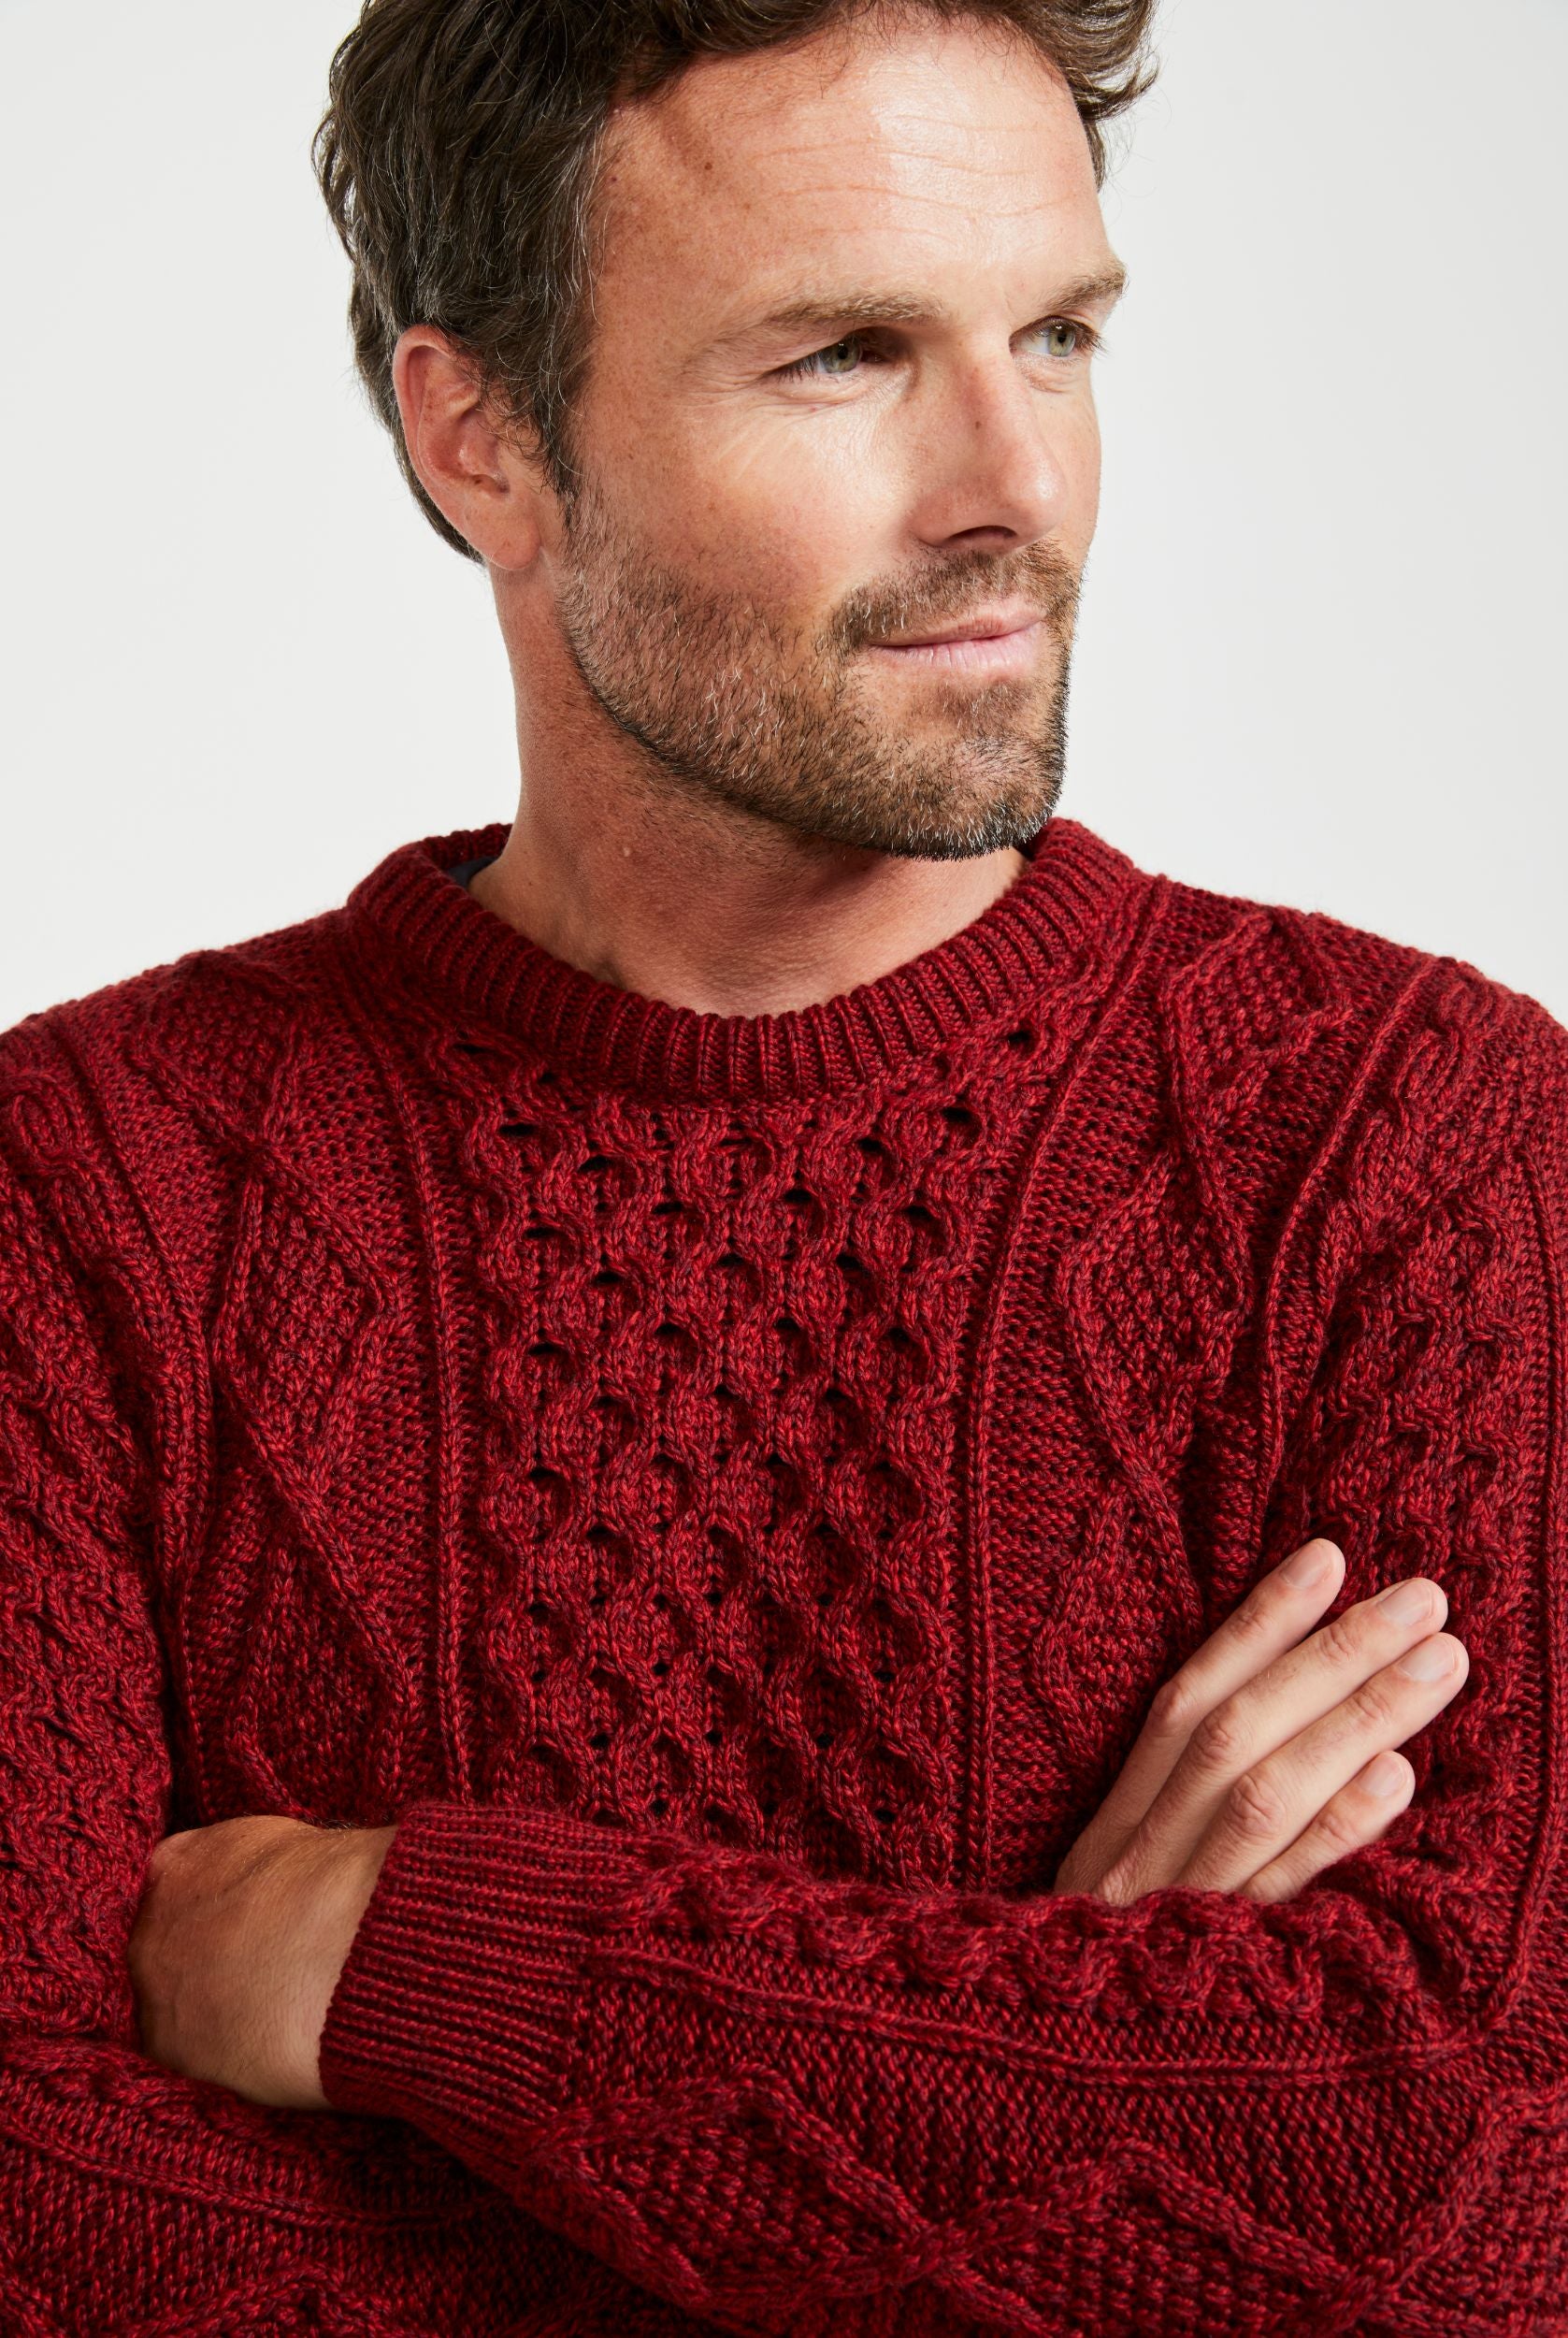 Red Aran sweater: handknit Aran jumper in XL size. Mens Aran